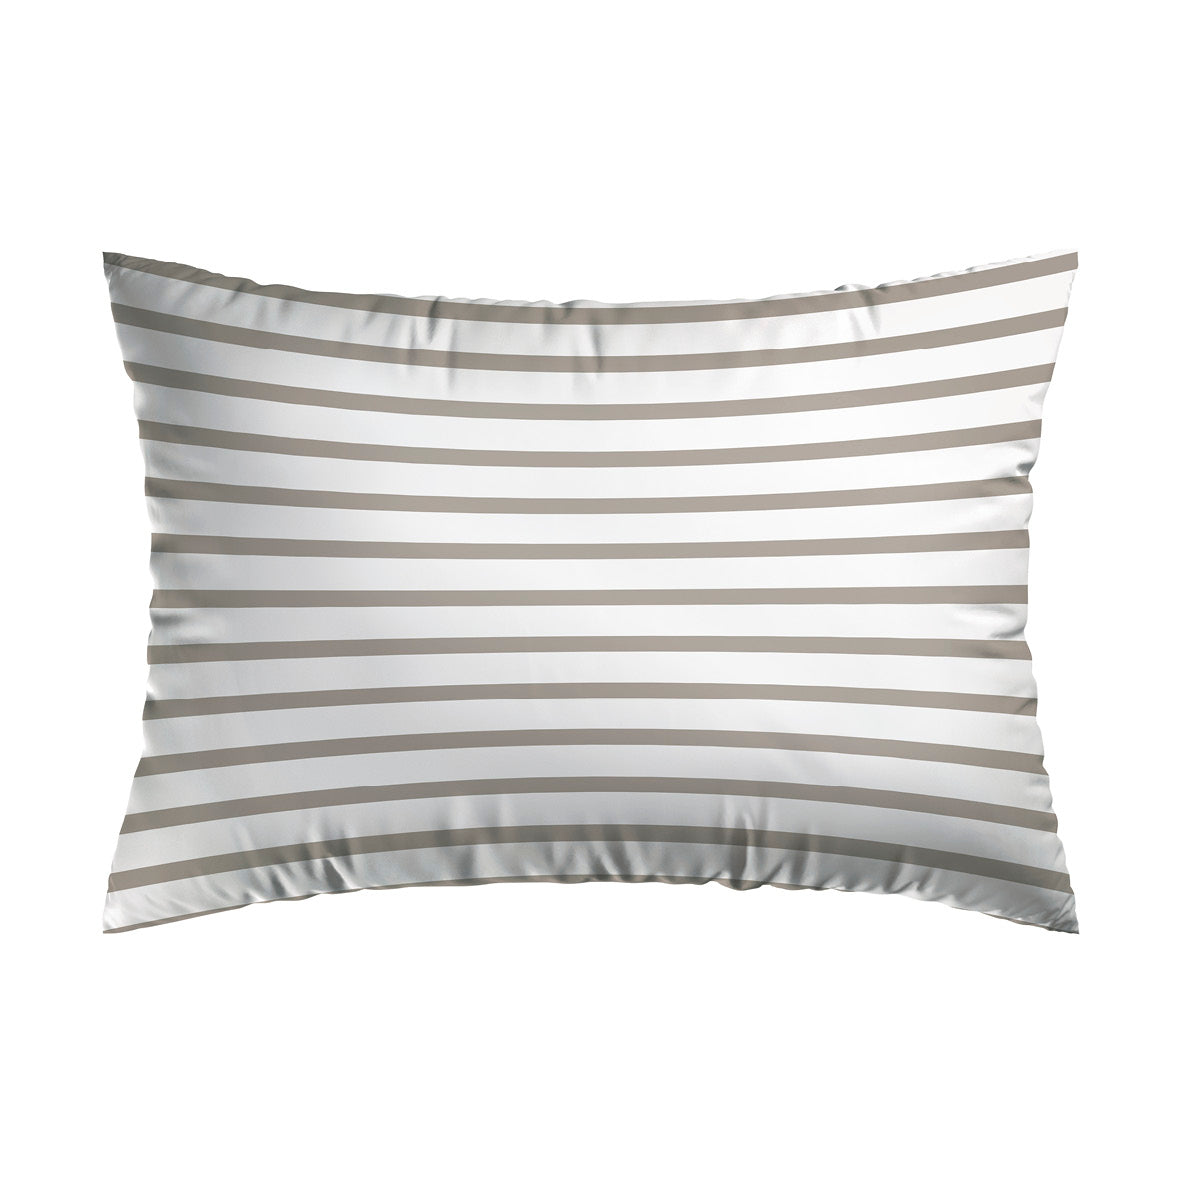 Pillowcase(s) cotton satin - Horizon Taupe 2 x (50 x 70 cm)